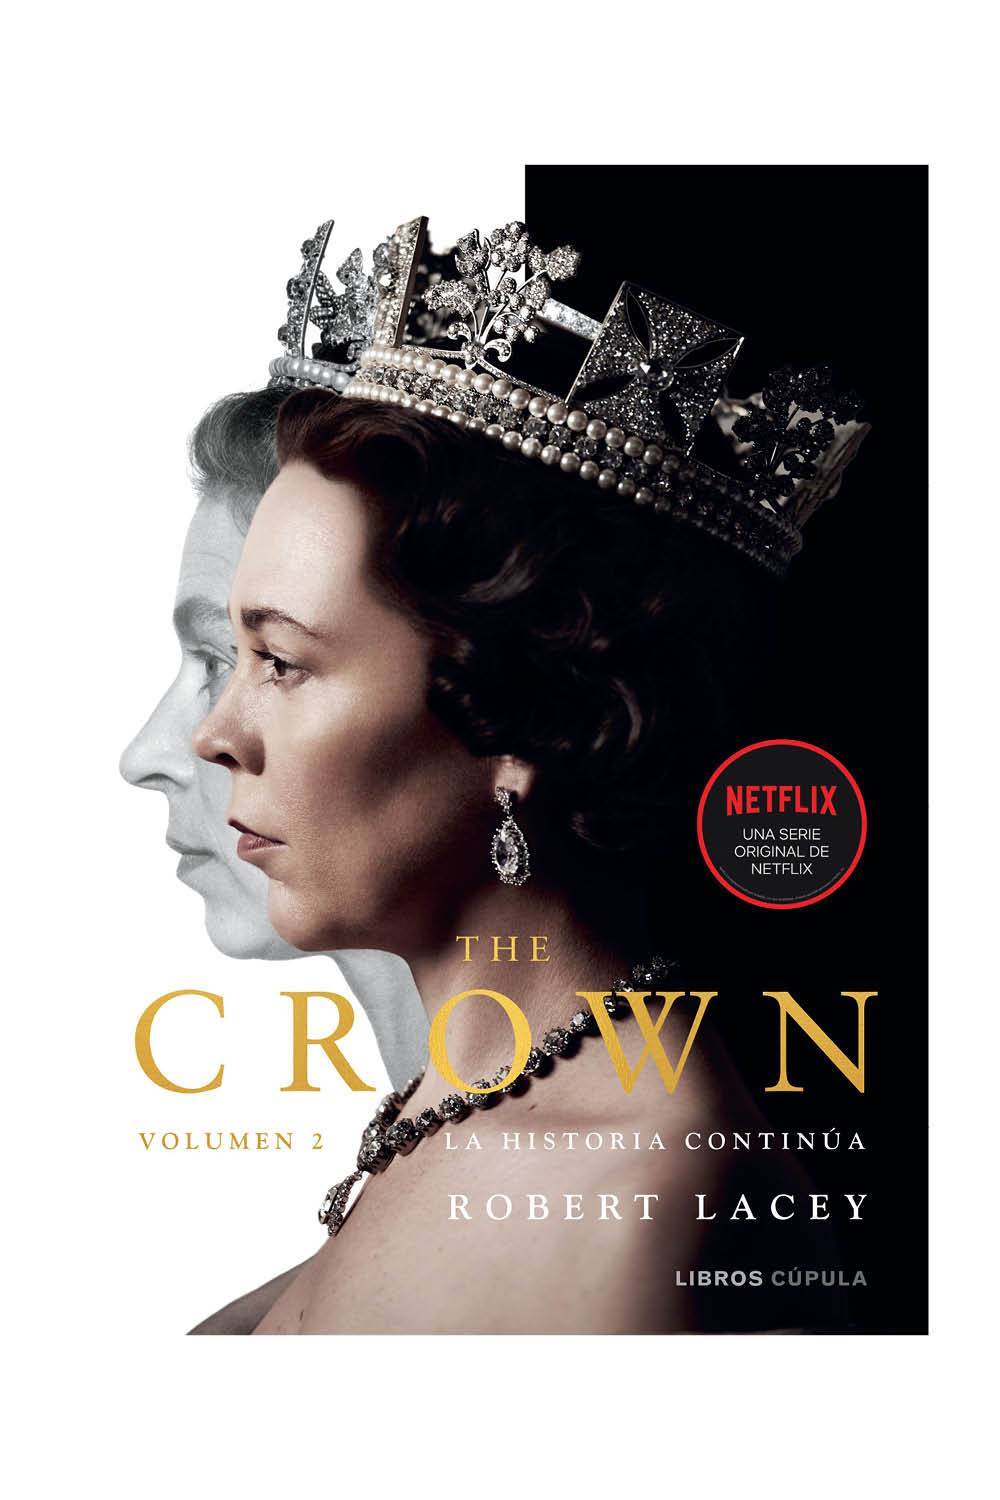 Libros que hay que leer: The Crown Volumen 2